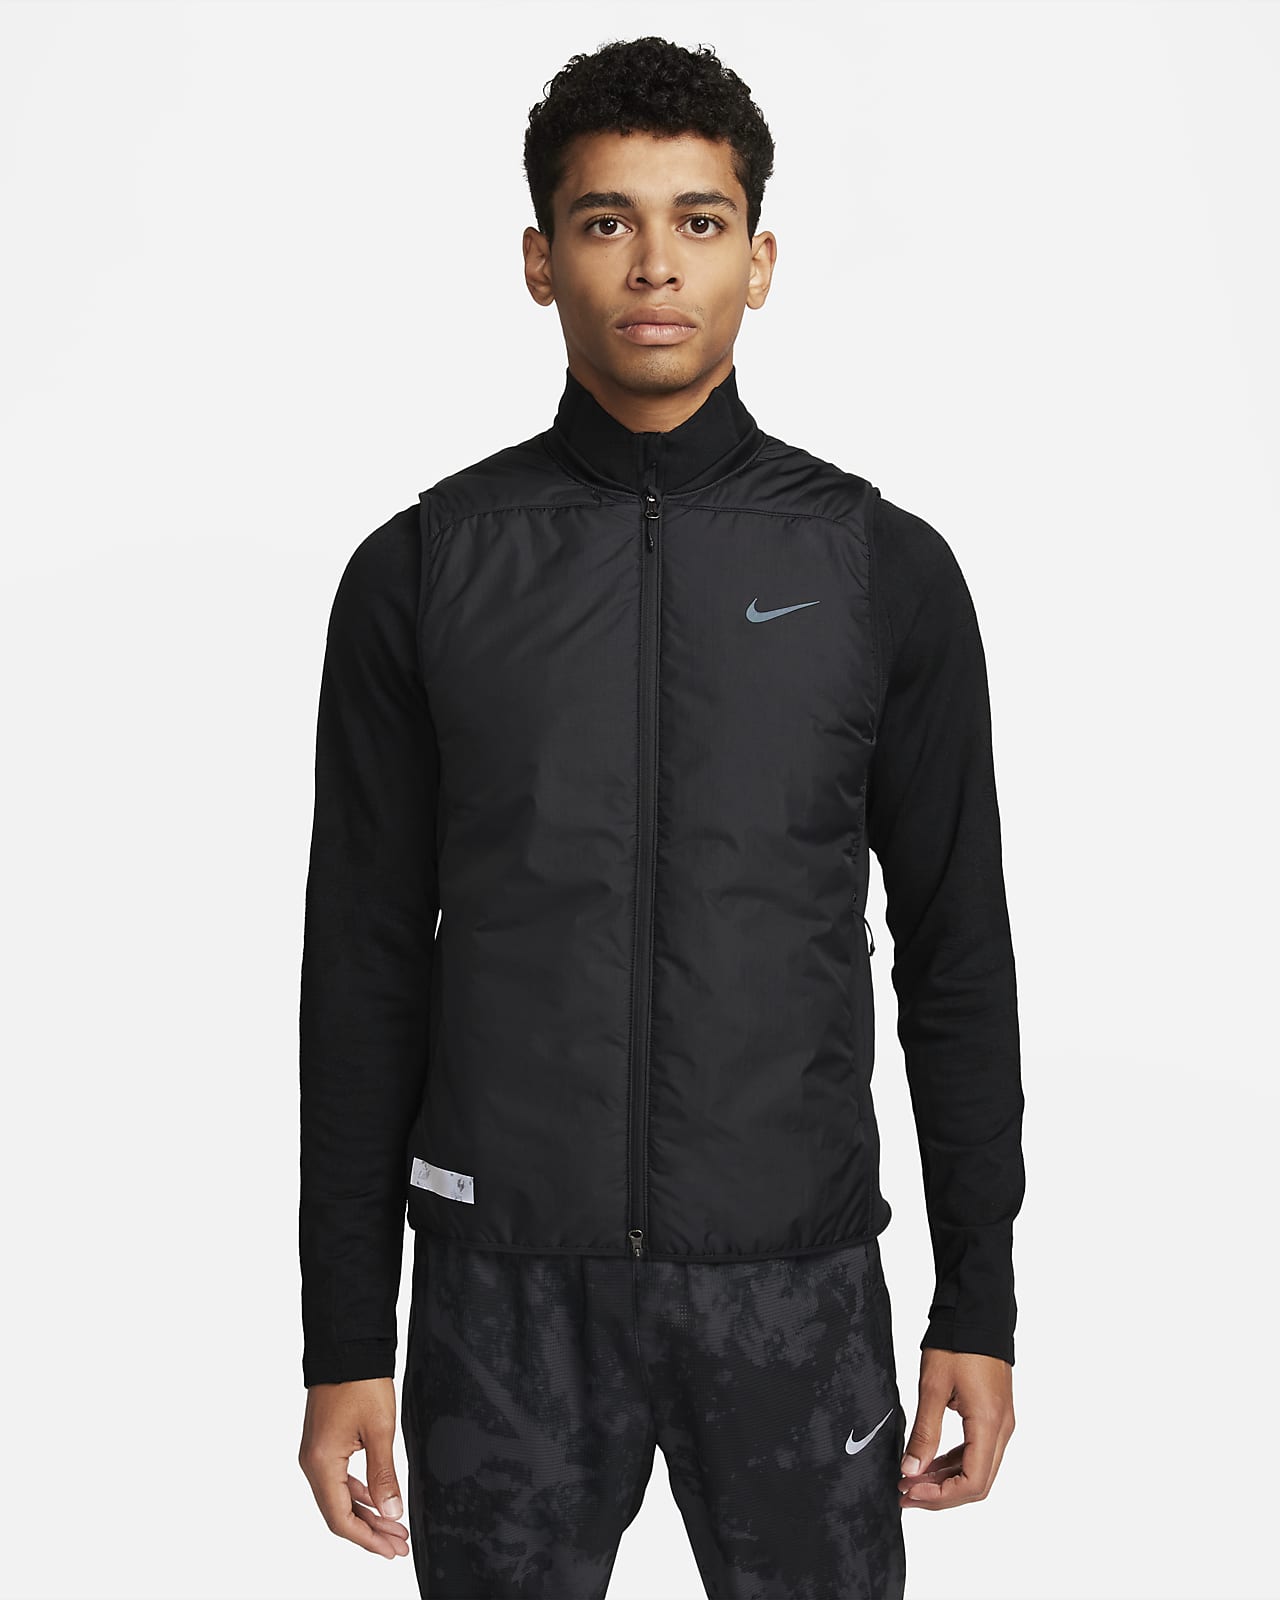 Hommes Articles réfléchissants Running Vêtements. Nike LU